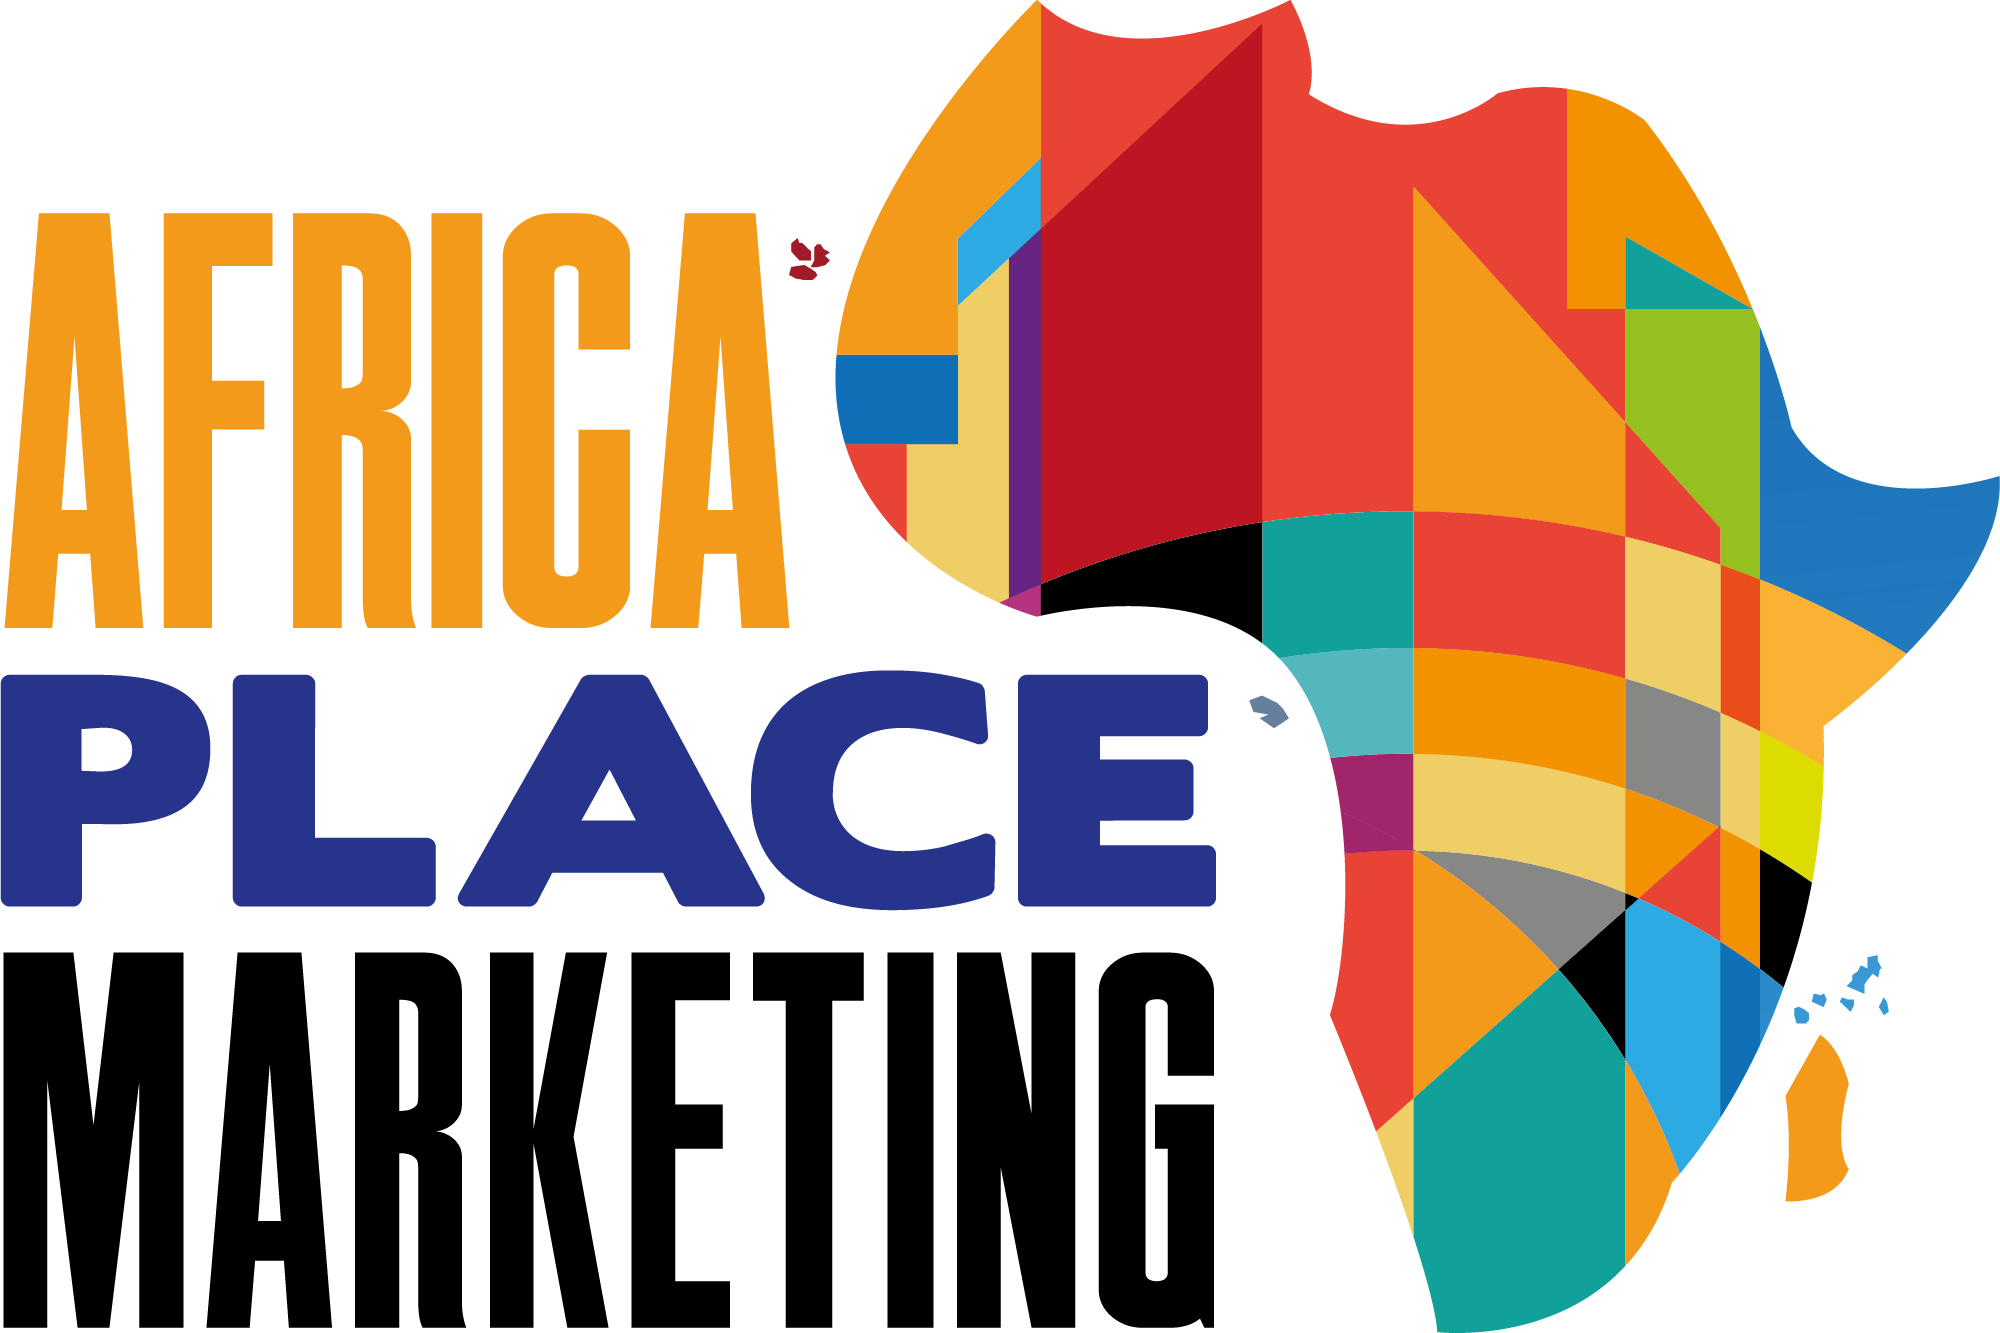 La mobilité aérienne interafricaine au cœur des débats de la 3<sup>ème</sup> édition de l’<strong>Africa Place Marketing</strong>